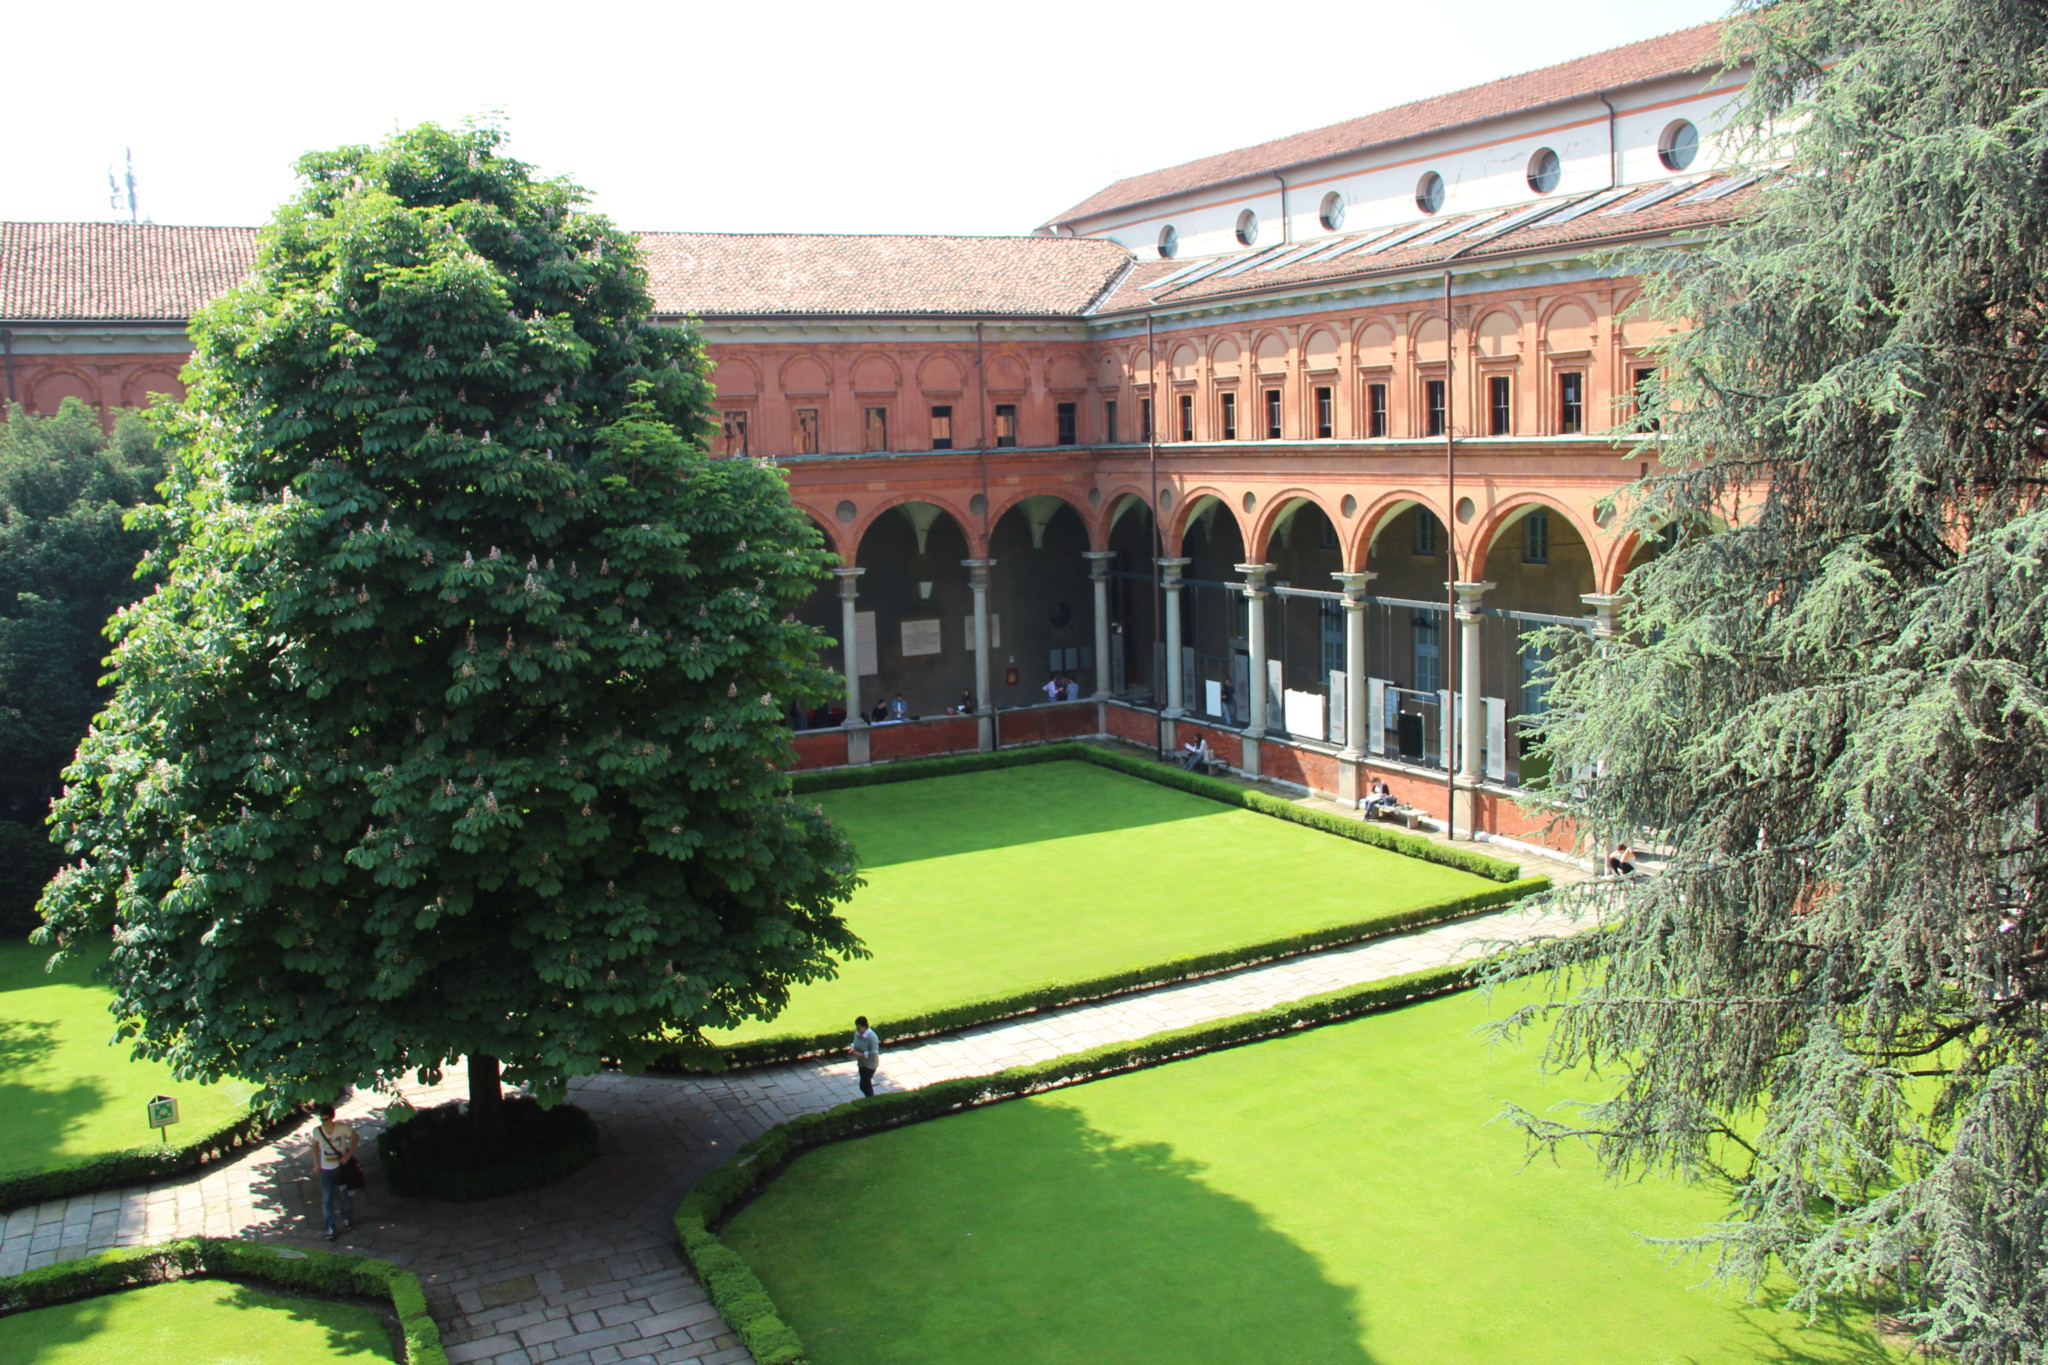 Università Cattolica del Sacro Cuore, Milano